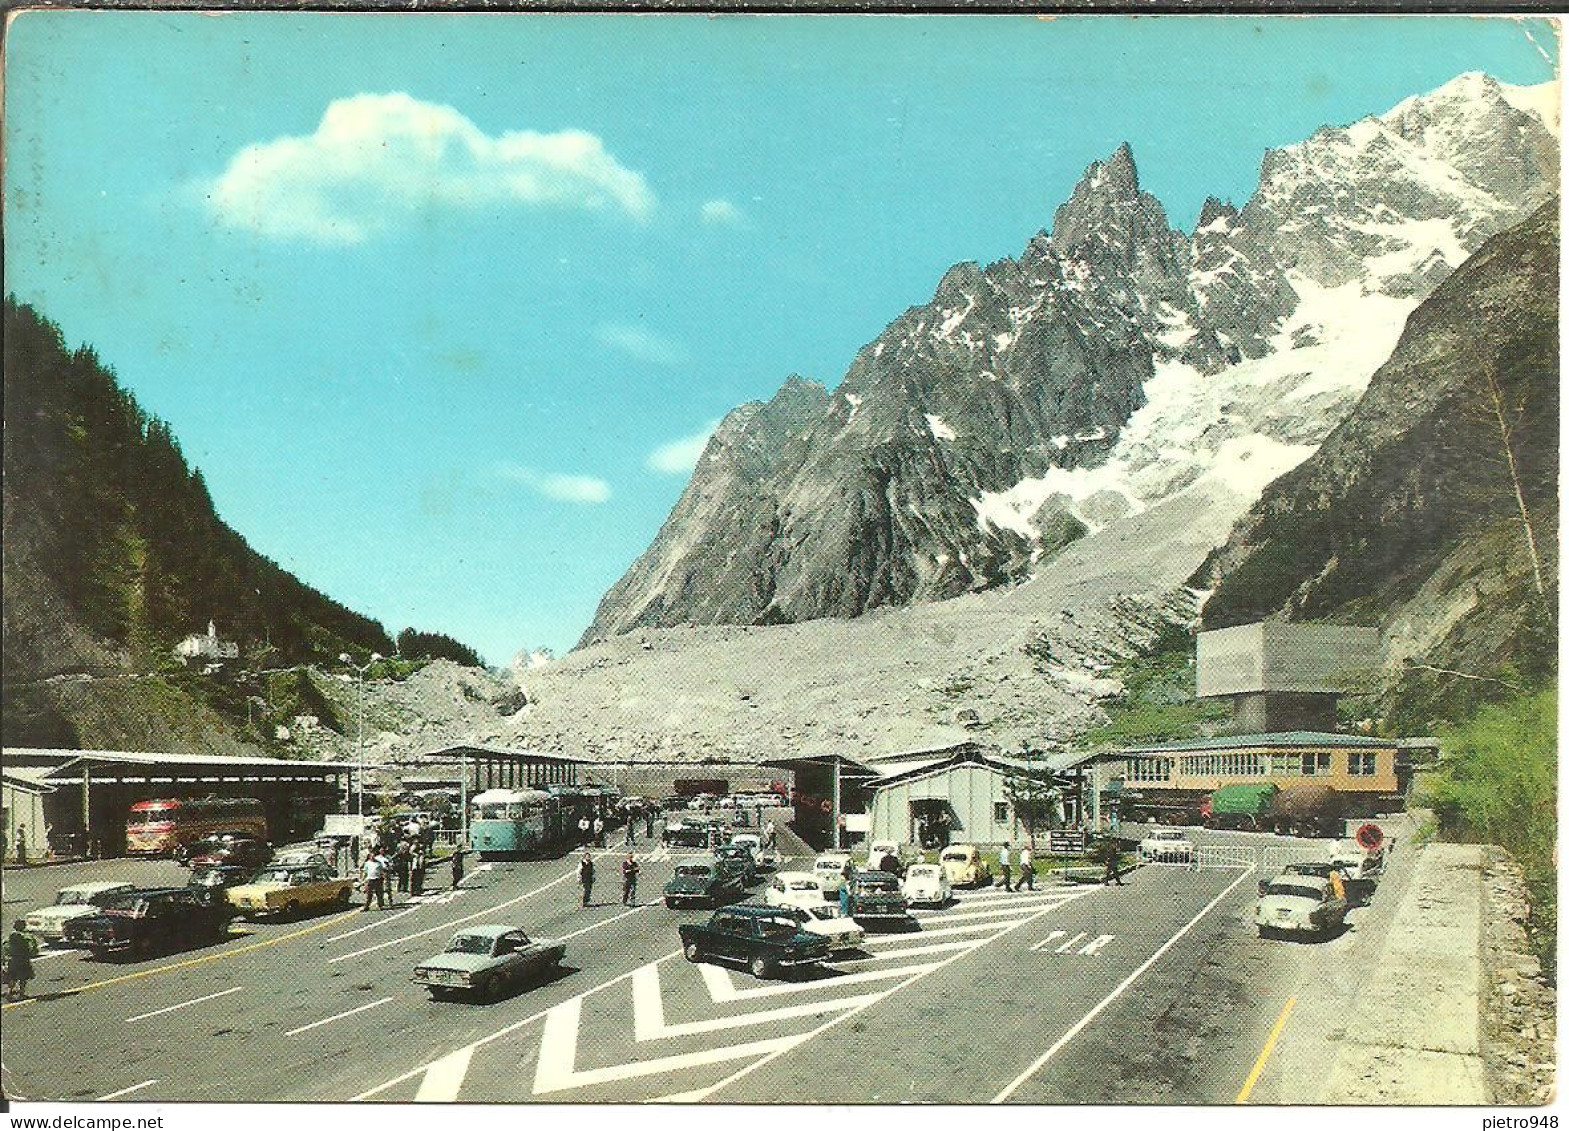 Entreves Fraz Courmayeur (Aosta) Piazzale Ingresso Traforo (Tunnel) Monte Bianco, Auto E Autobus D'Epoca, Old Cars & Bus - Aosta